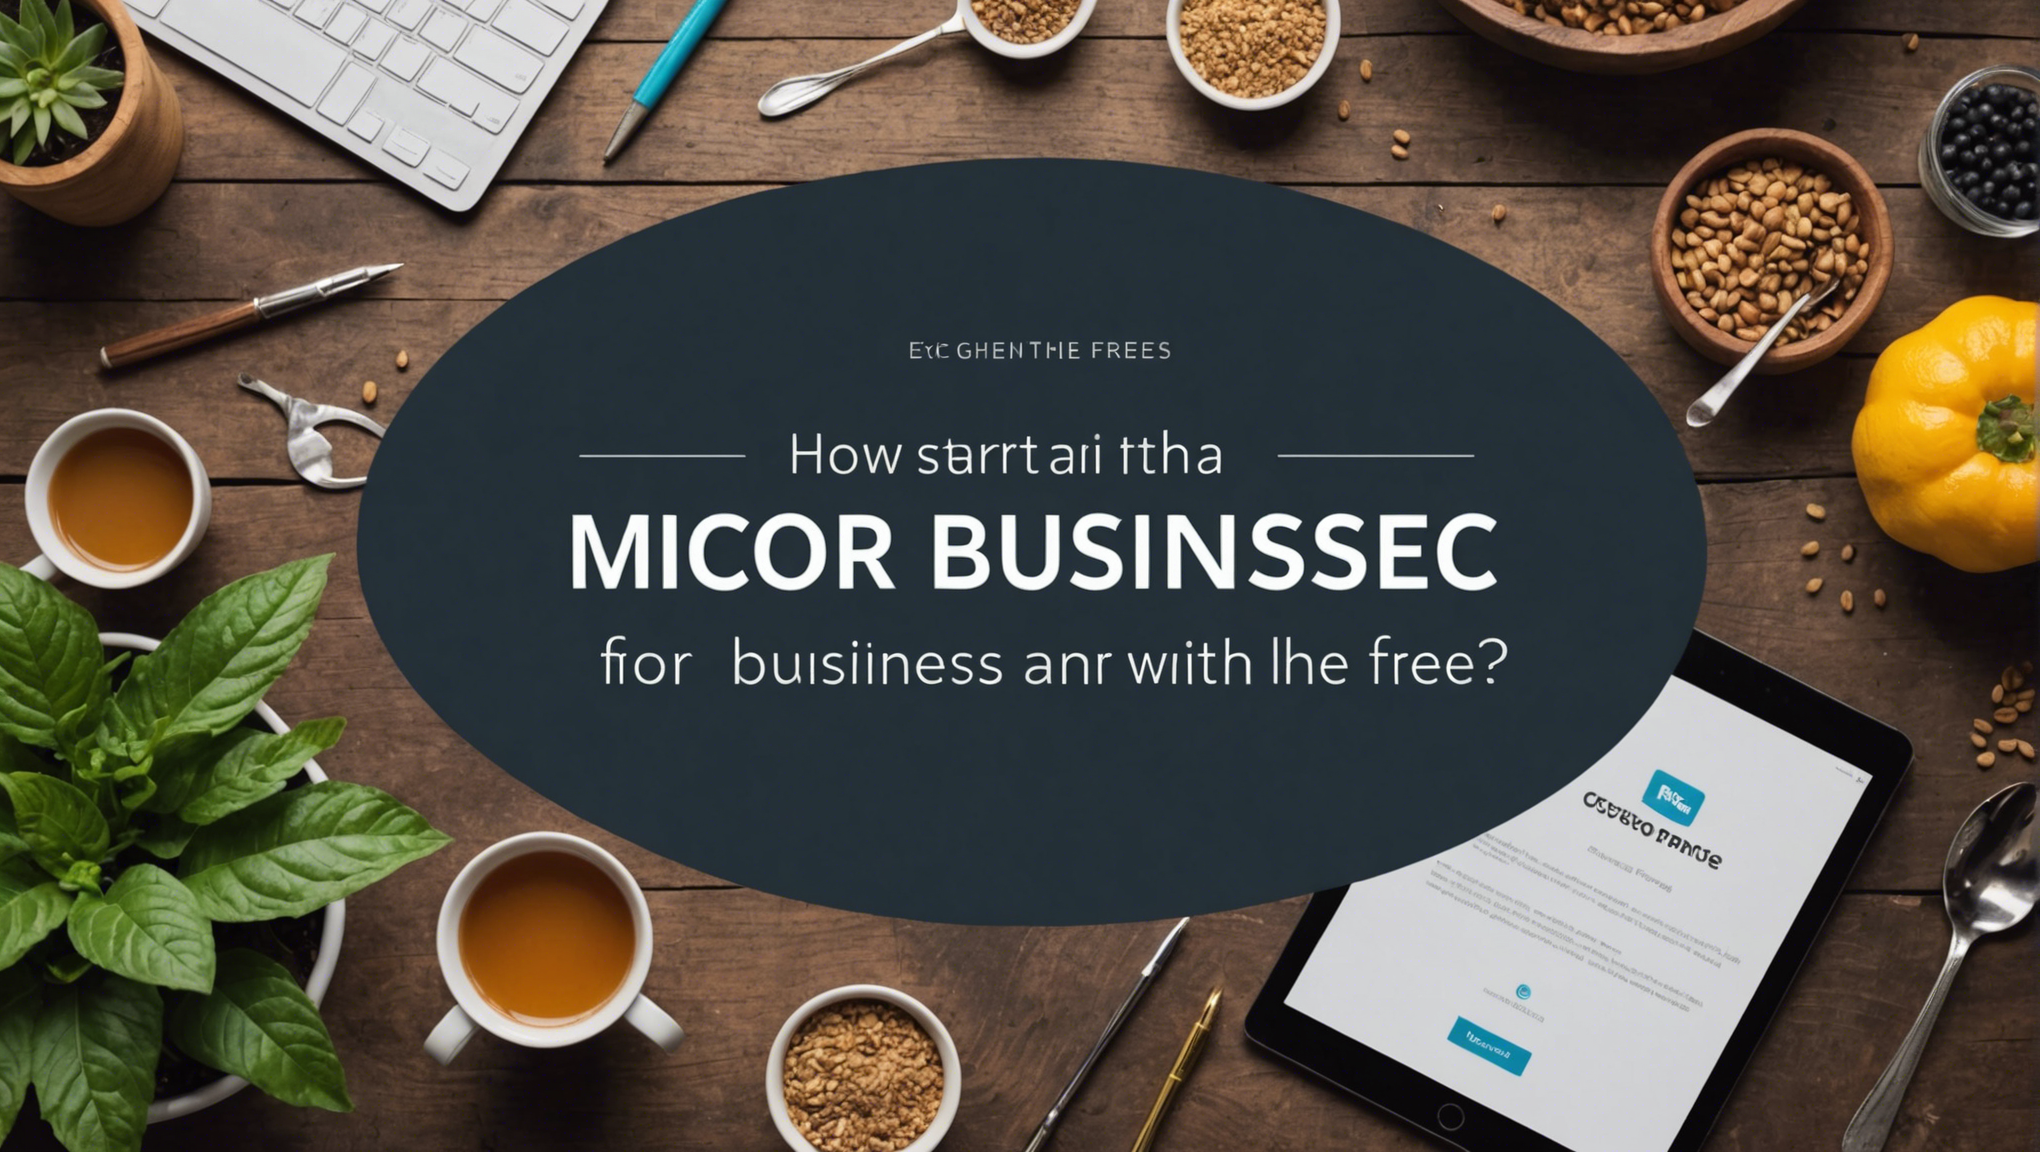 découvrez comment créer une micro entreprise gratuitement. conseils et étapes pour vous lancer dans l'entrepreneuriat sans frais. tout ce que vous devez savoir pour démarrer votre entreprise sans dépenser.